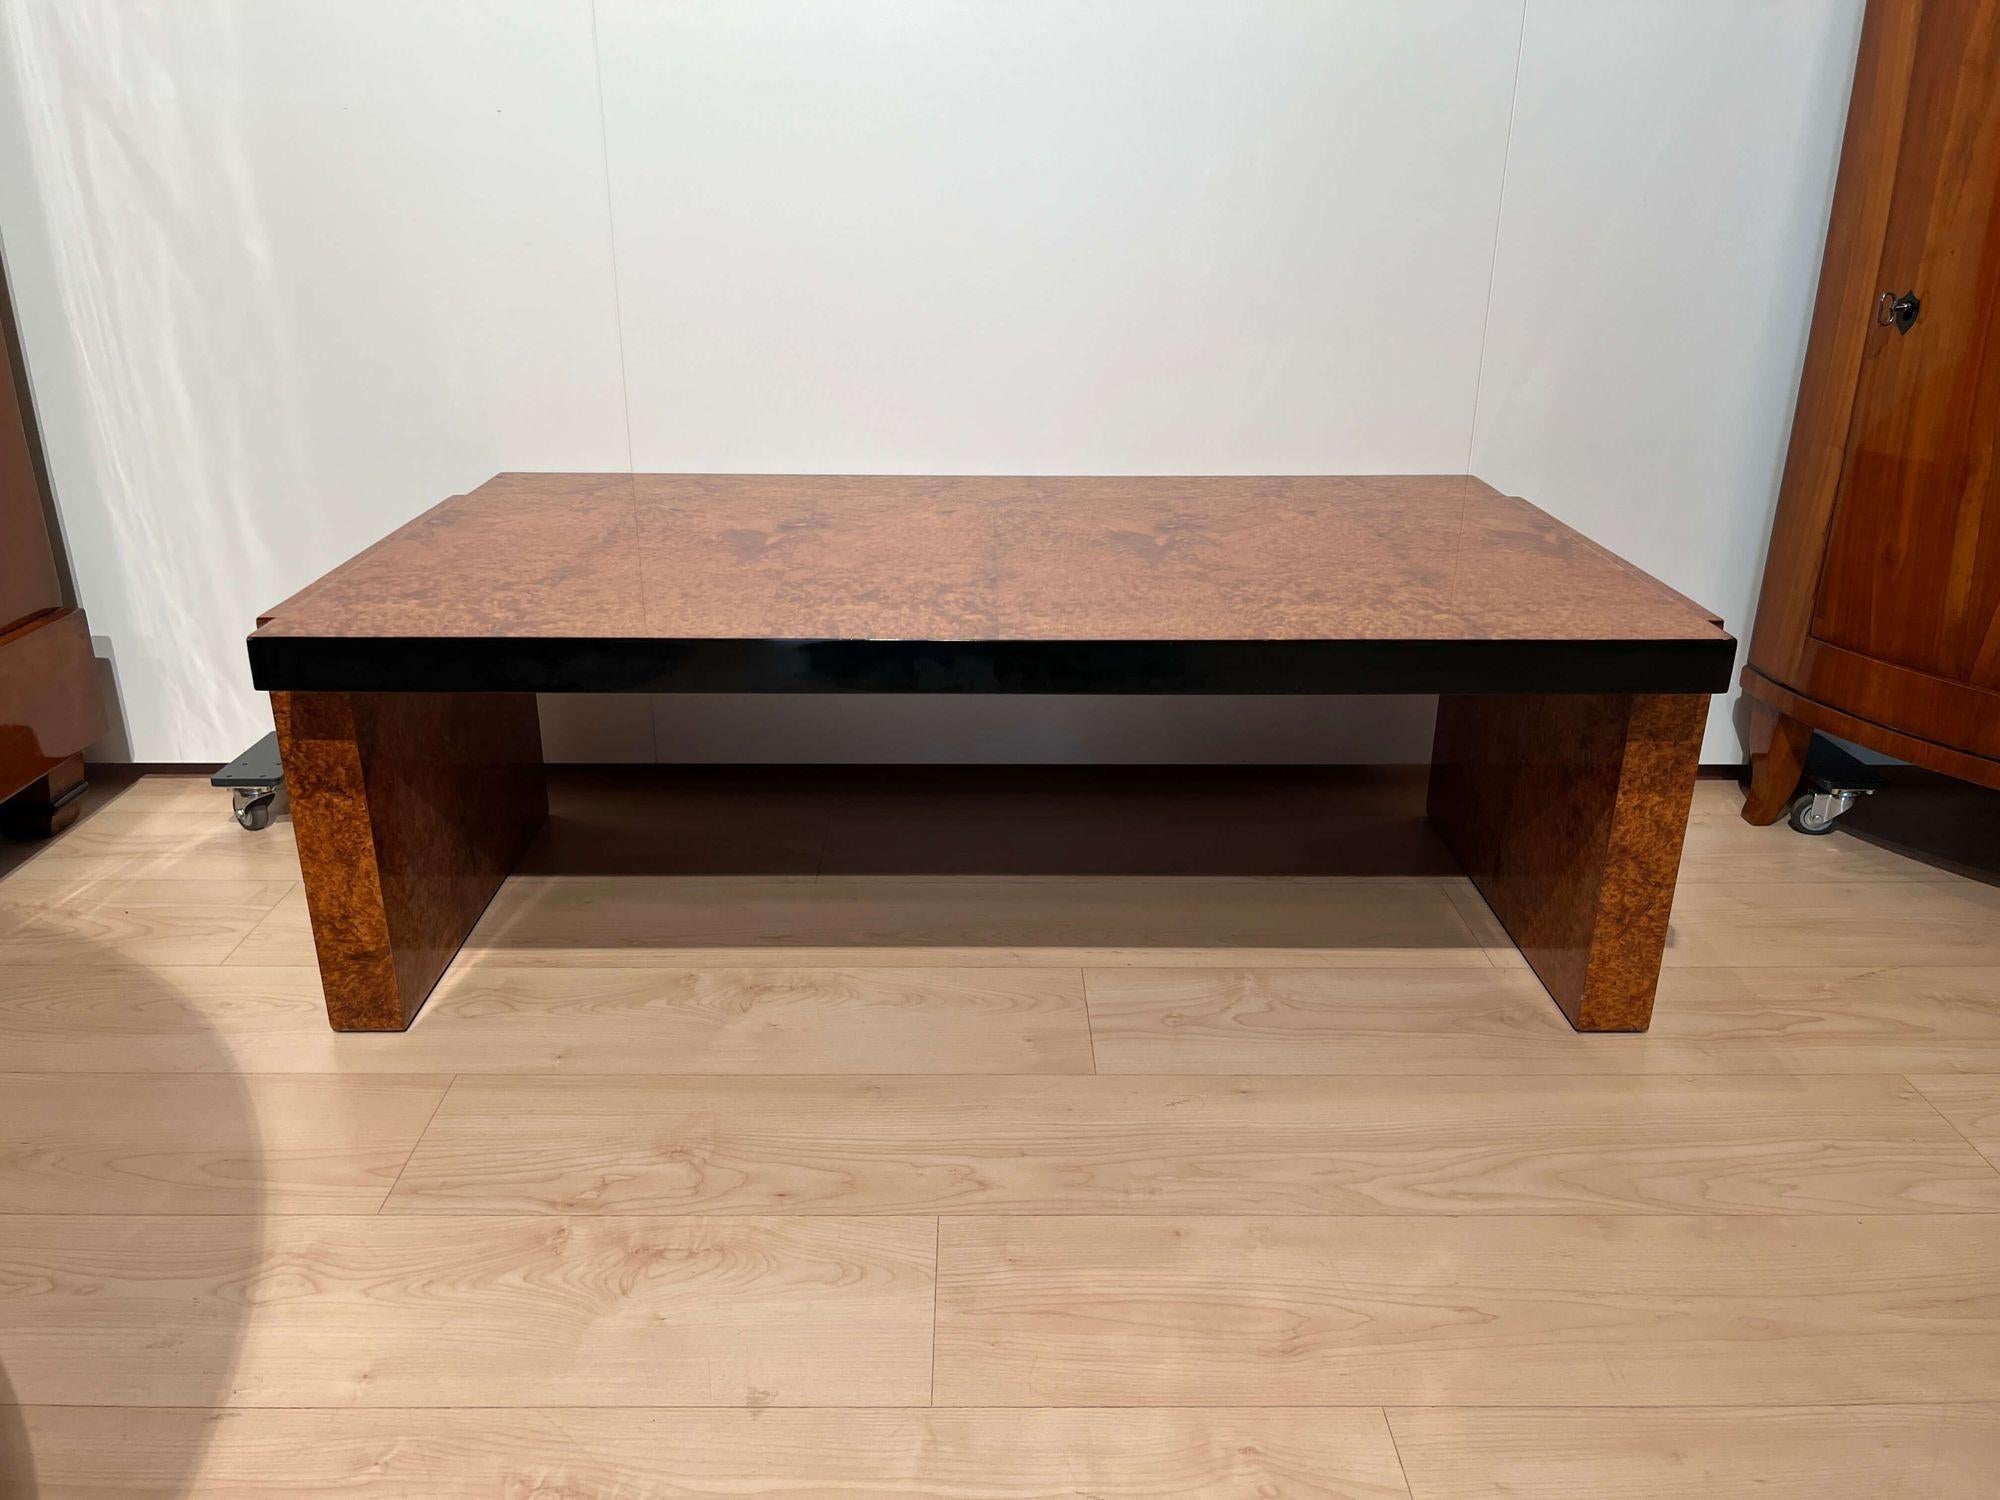 Niedriges rechteckiges Art-Deco-Sofa oder Couchtisch aus Frankreich um 1930.
Amboyna-Wurzelholz furniert und lackiert. An den Rändern schwarz lackiert.
Abmessungen: H 40,5 cm x B 122 cm x T 68 cm